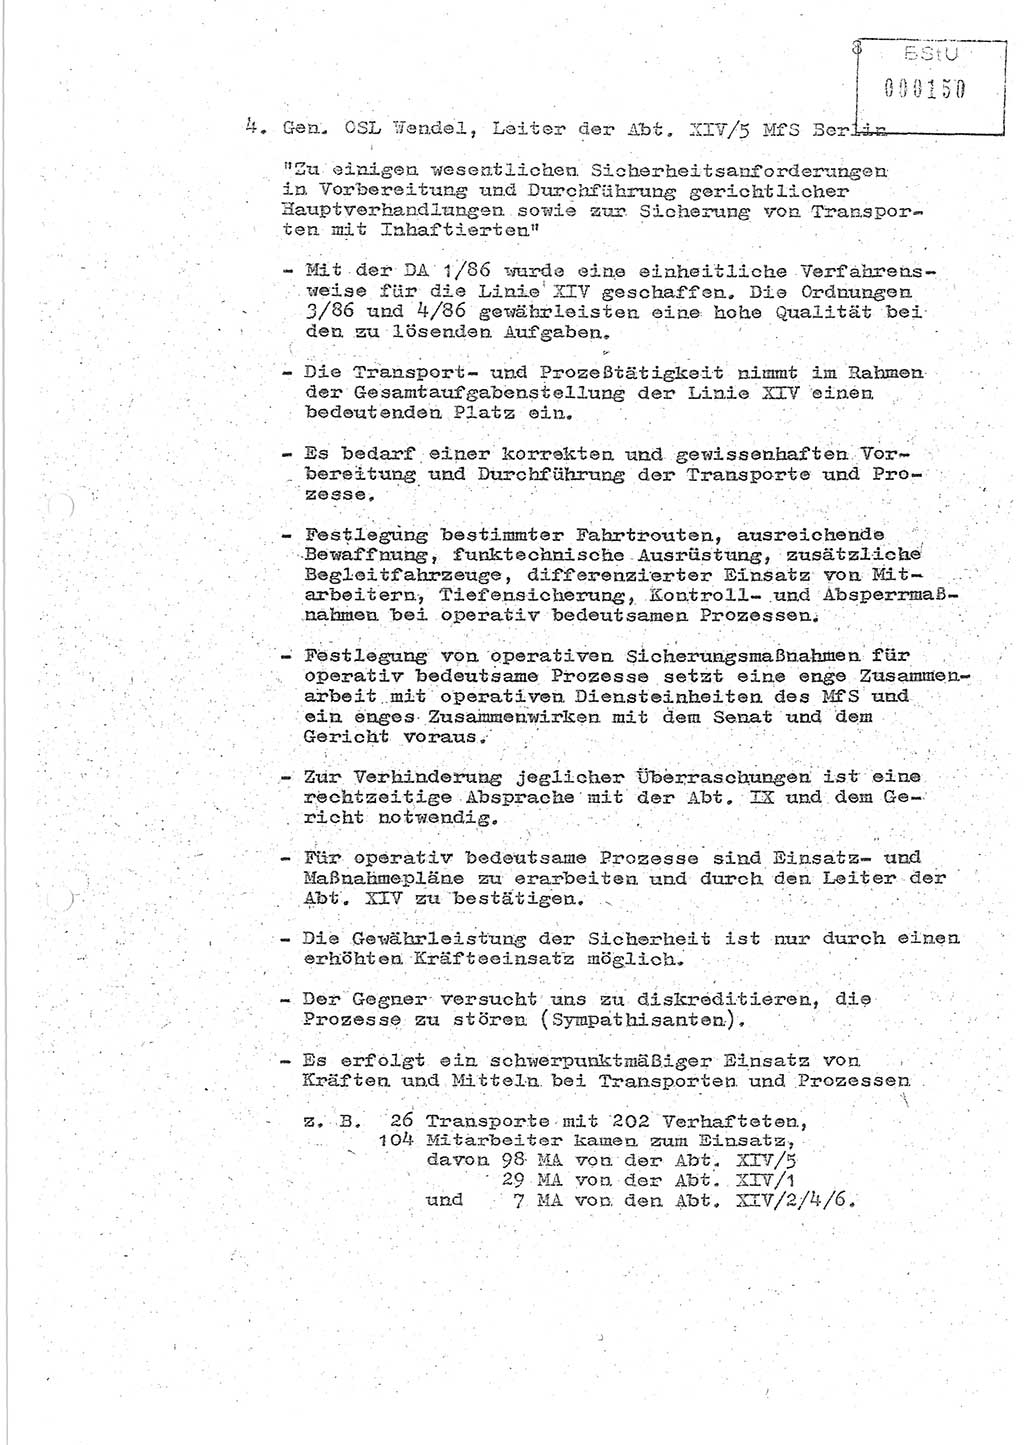 Protokoll zur zentralen Dienstkonferenz der Linie (Abteilung) ⅩⅣ des MfS [Ministerium für Staatssicherheit, Deutsche Demokratische Republik (DDR)] am 5.3./6.3.1986 in der Abteilung (Abt.) XIV des MfS Berlin, Abteilung XIV, Berlin 5.3./6.3.1986, Seite 8 (Prot. Di.-Konf. Abt. ⅩⅣ MfS DDR Bln. 1986, S. 8)